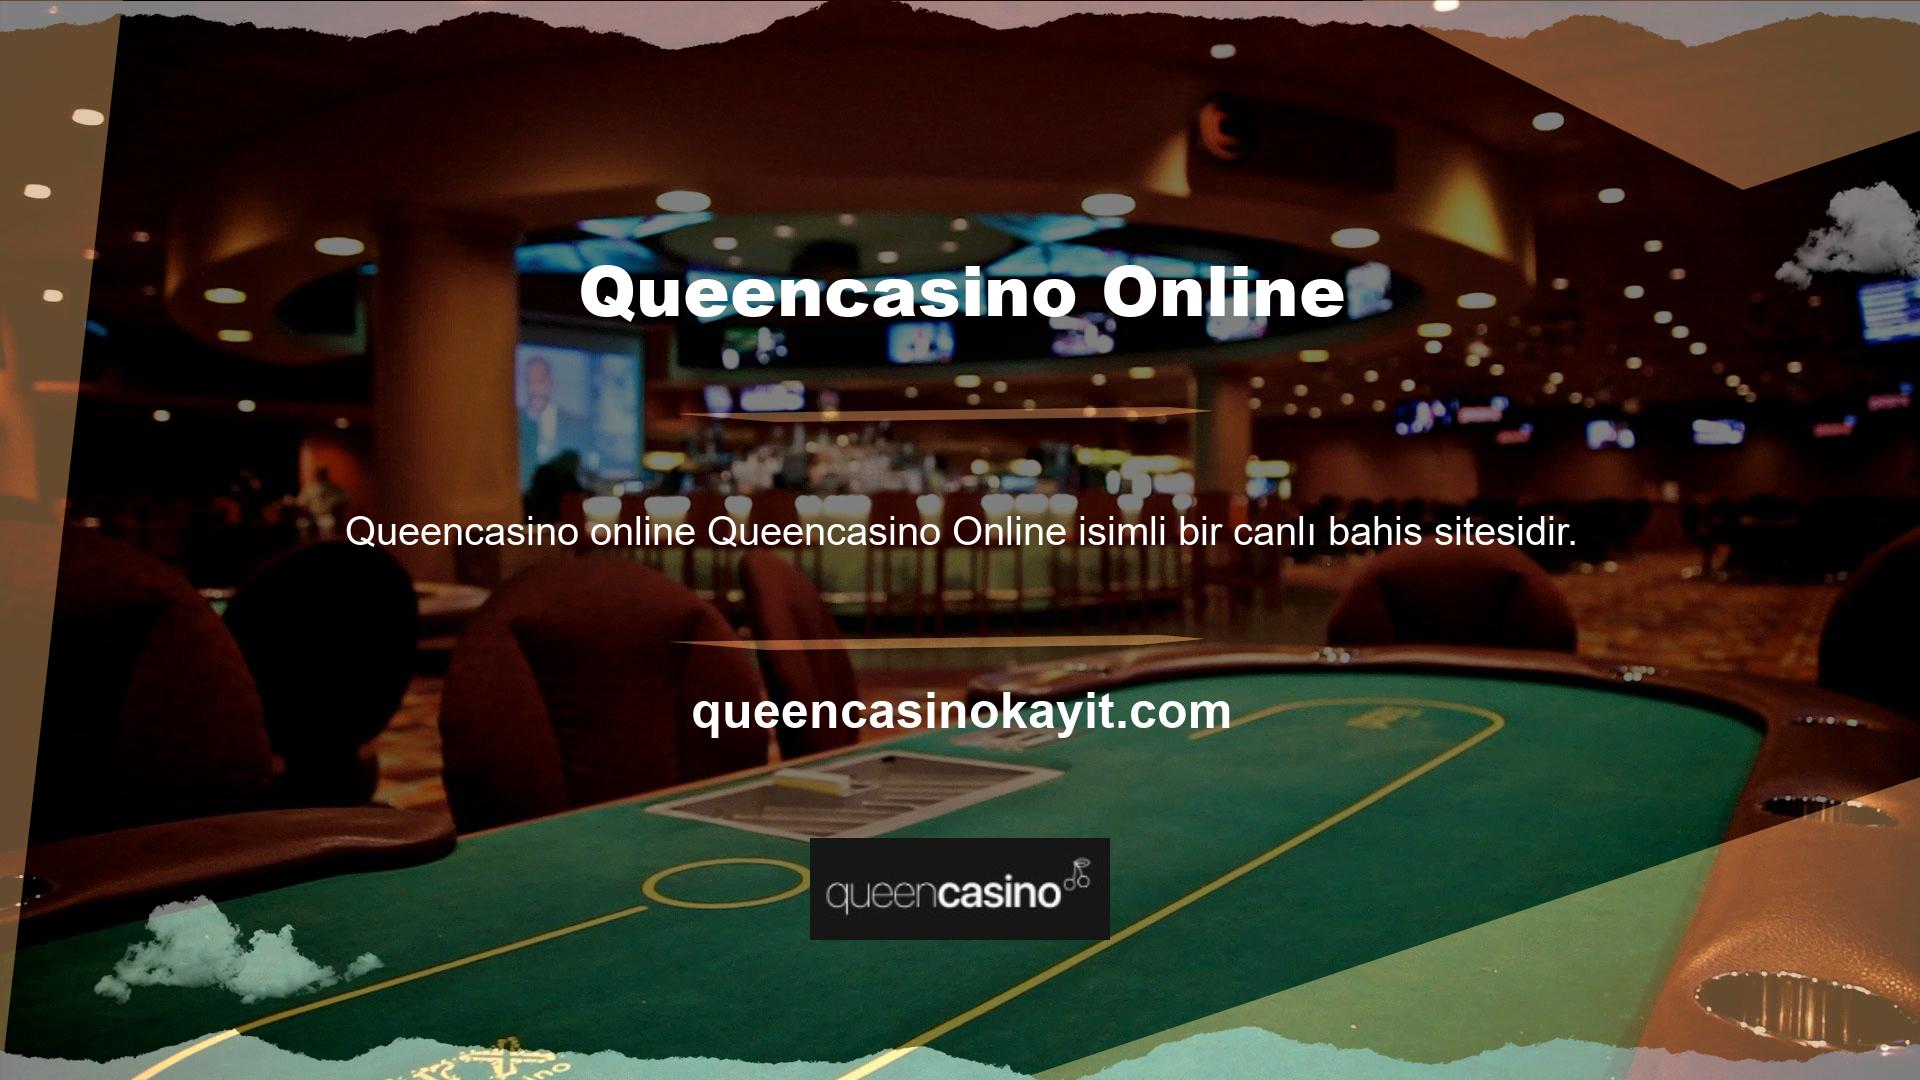 Bu site, kullanıcılarına spor bahisleri ve genel olarak casinolar alanında canlı bahis sunmaktadır